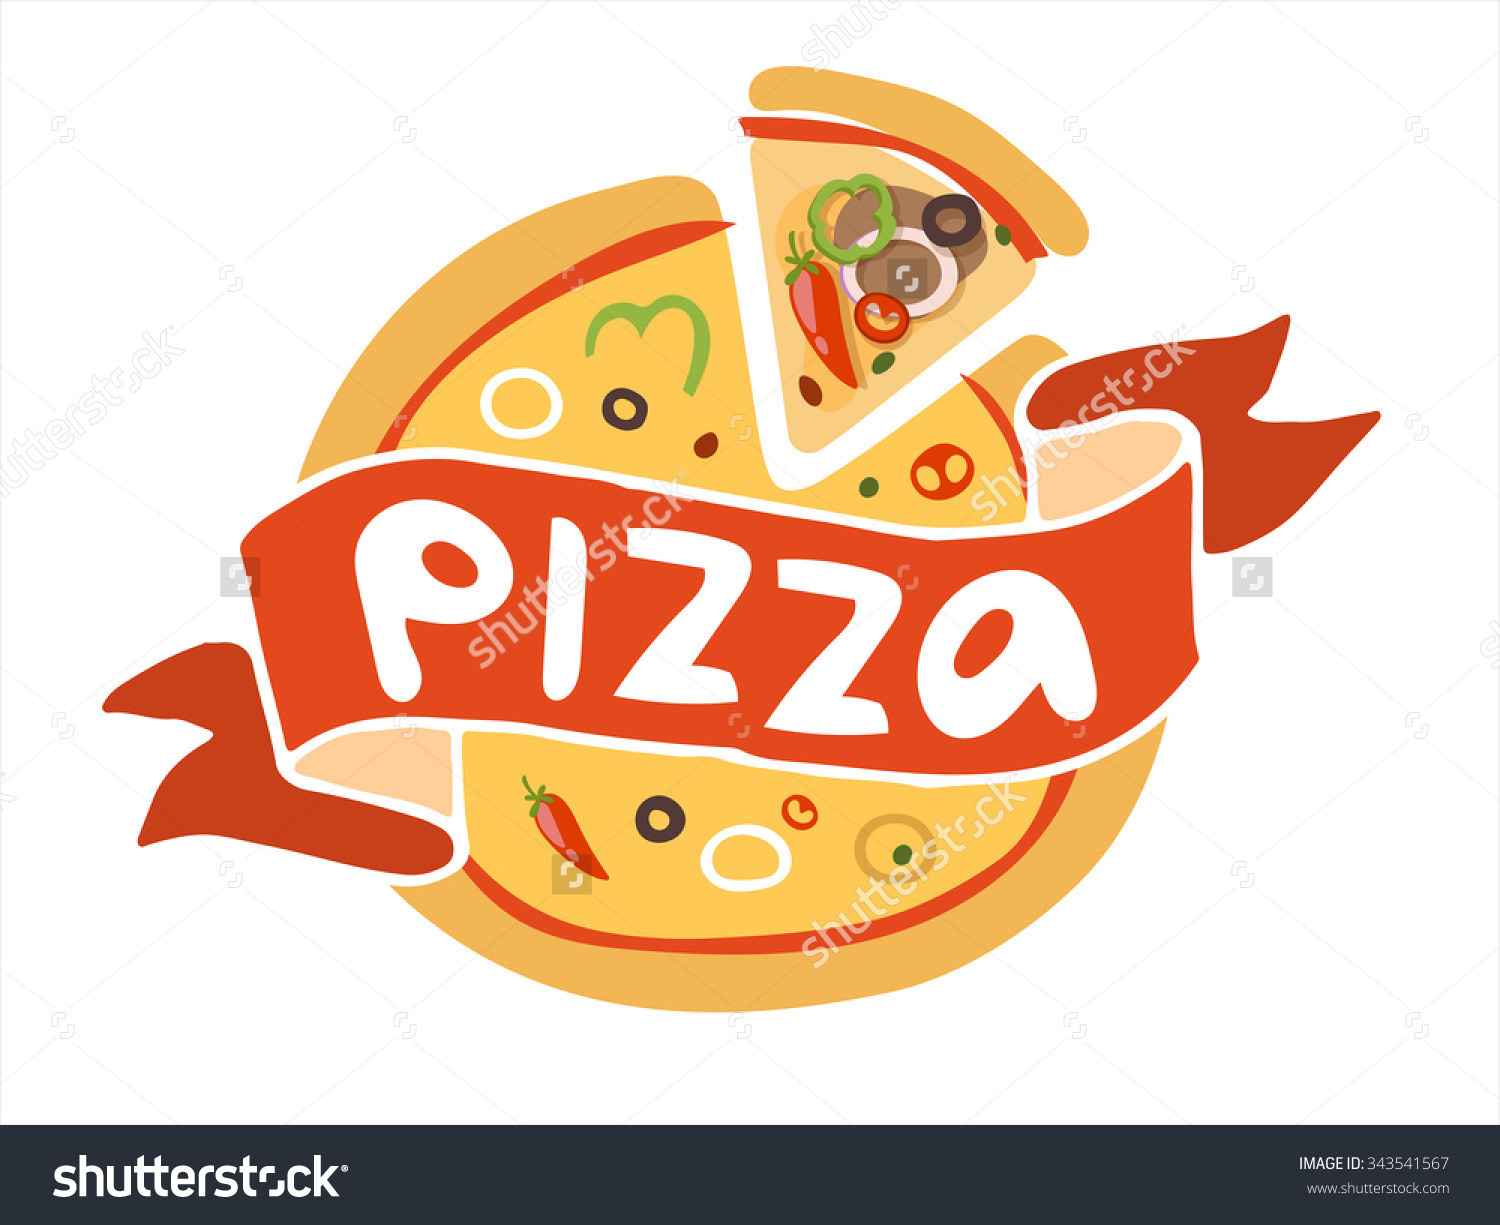 pizza logos clip art - photo #22